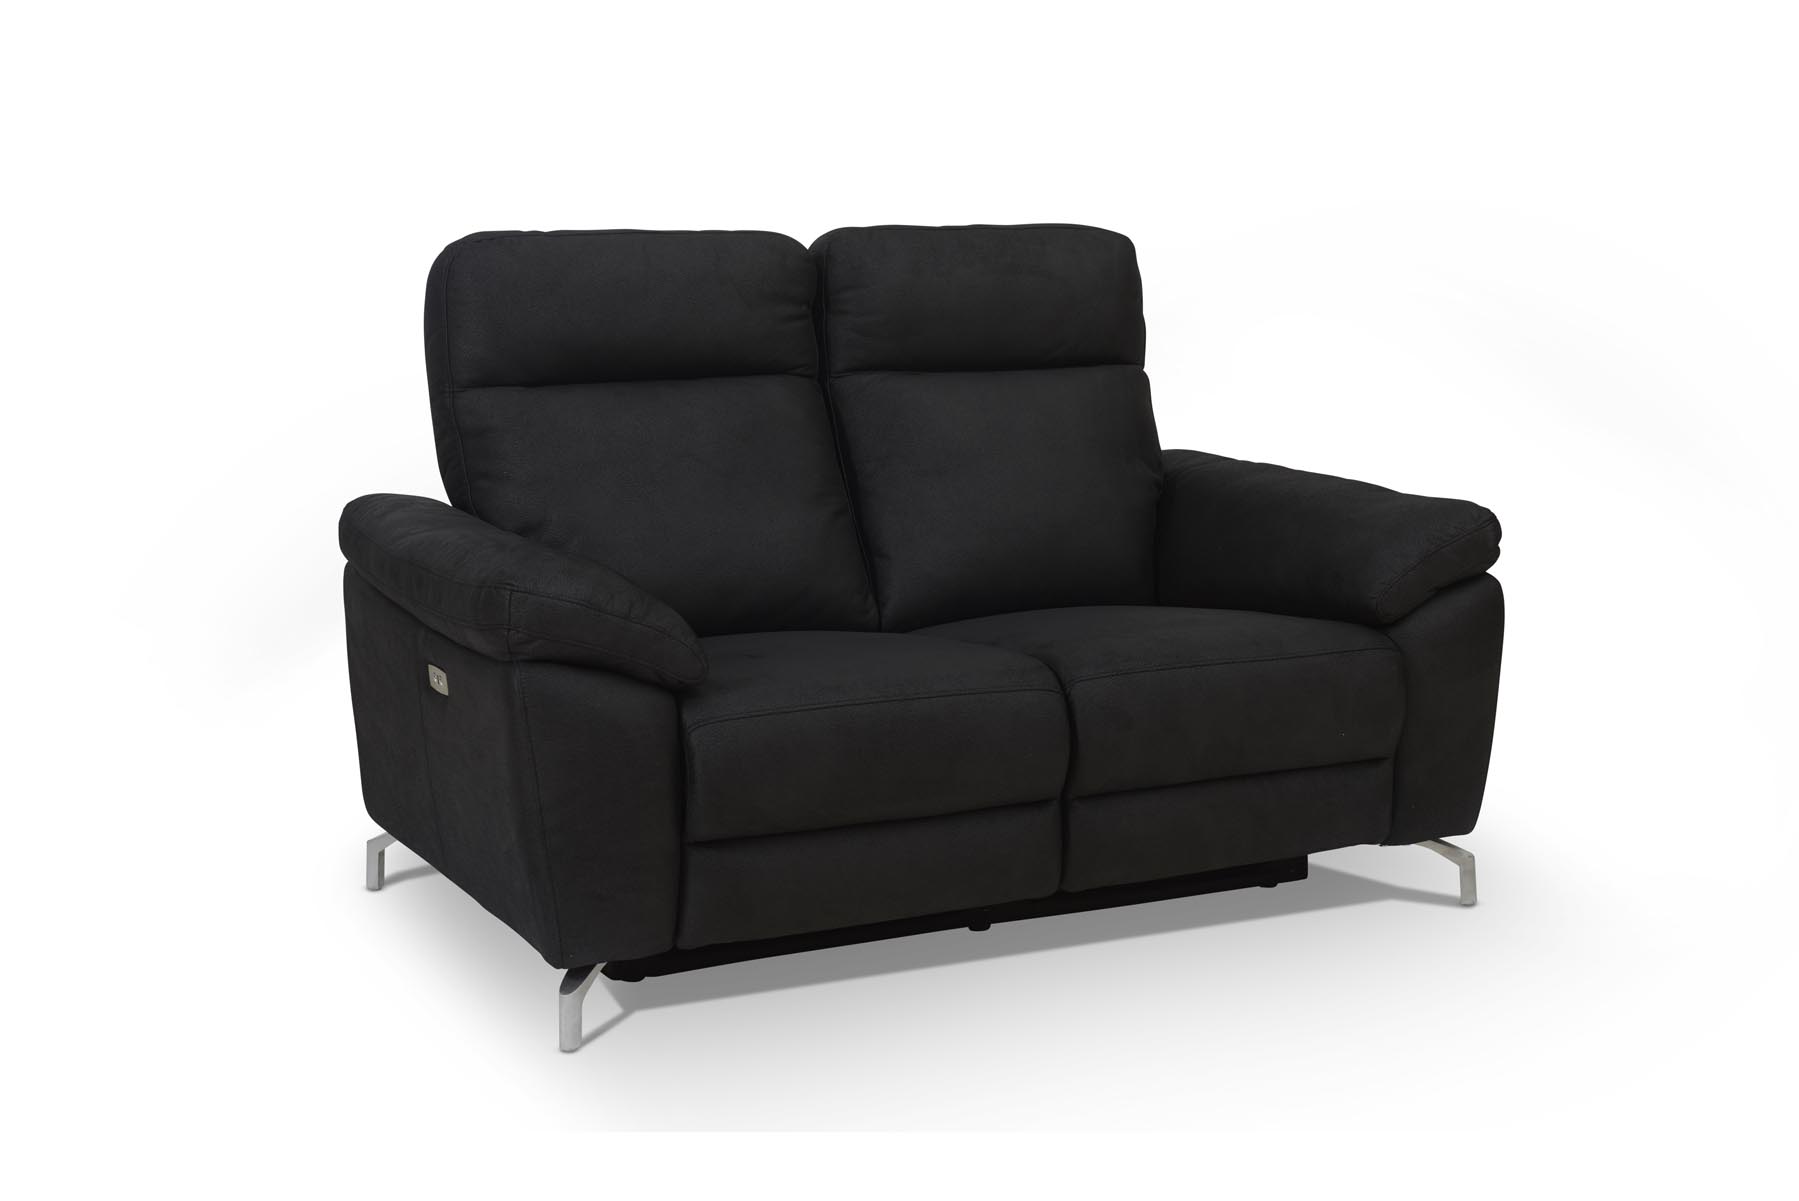 Selma 2 personers sofa med elevations sæder til nakke, ryg og ben, sort microfiber